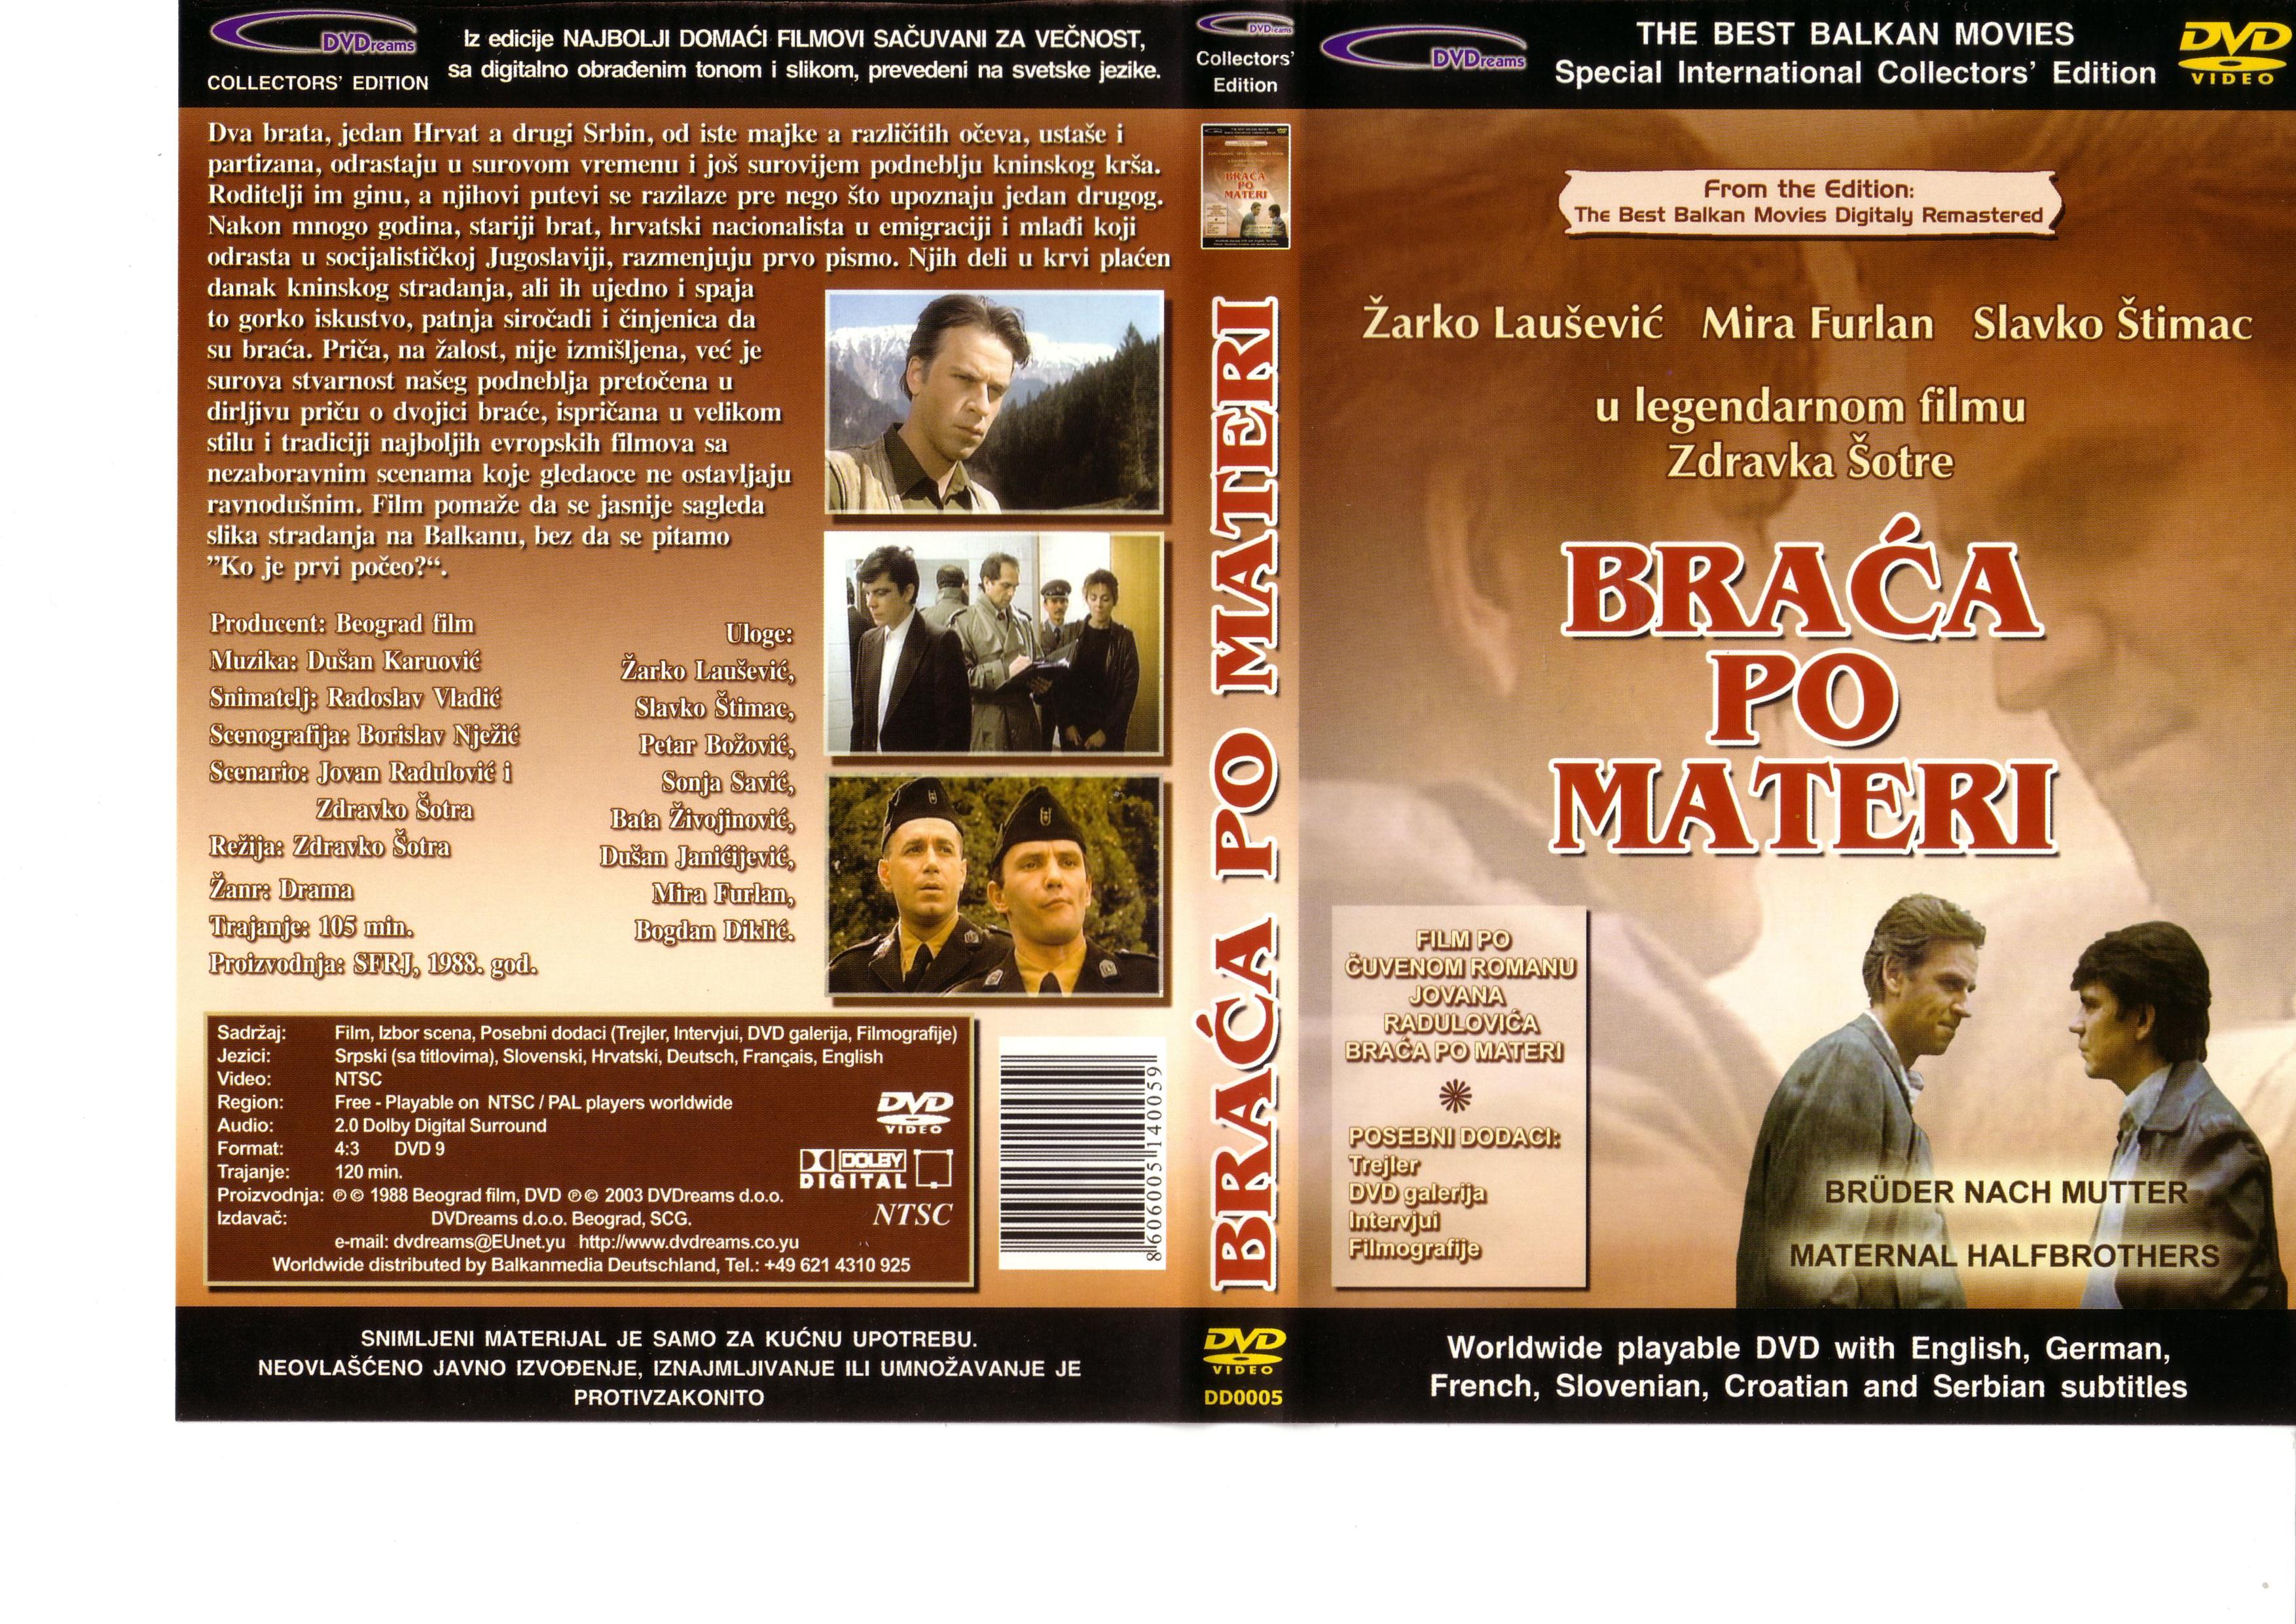 Click to view full size image -  DVD Cover - B - DVD - BRACA PO MATERI - DVD - BRACA PO MATERI.JPG